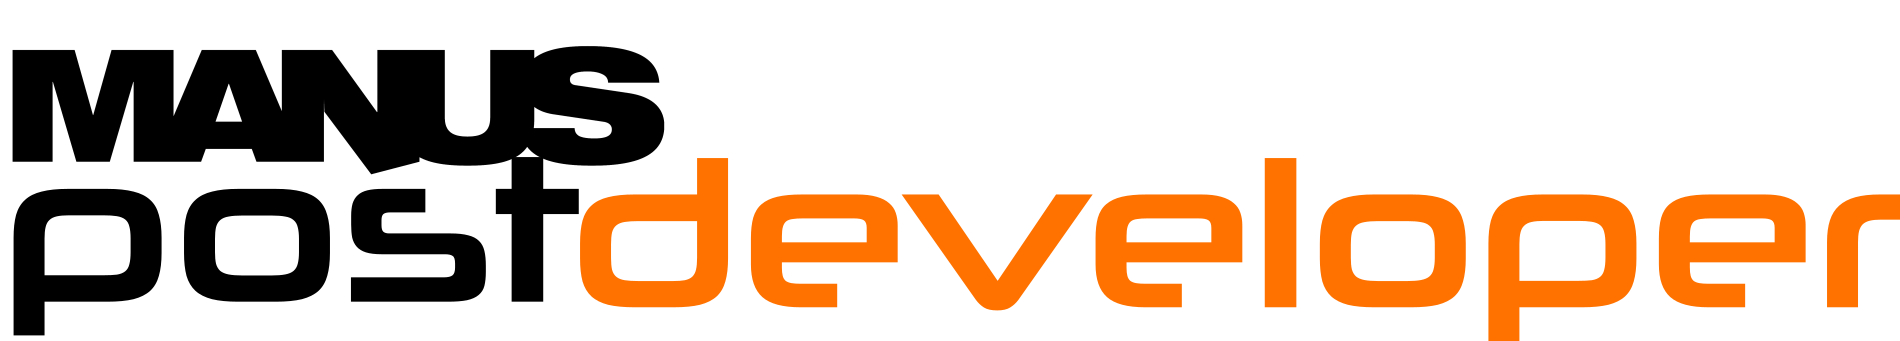 postdeveloper logo